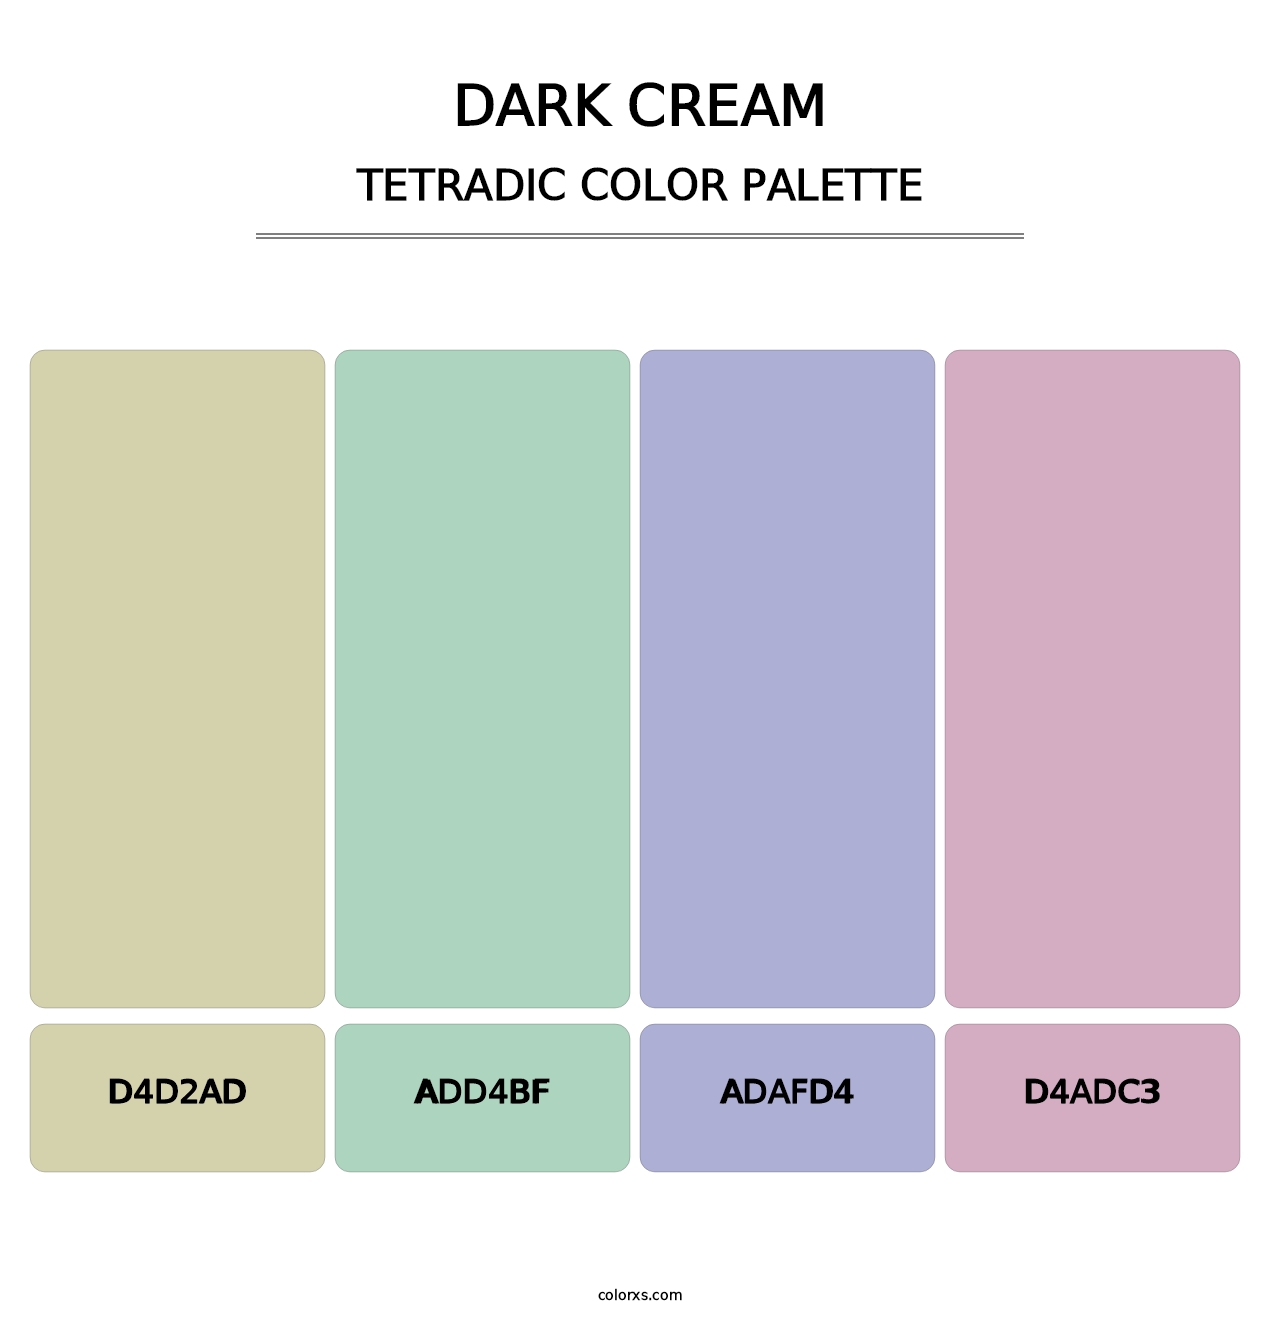 Dark Cream - Tetradic Color Palette